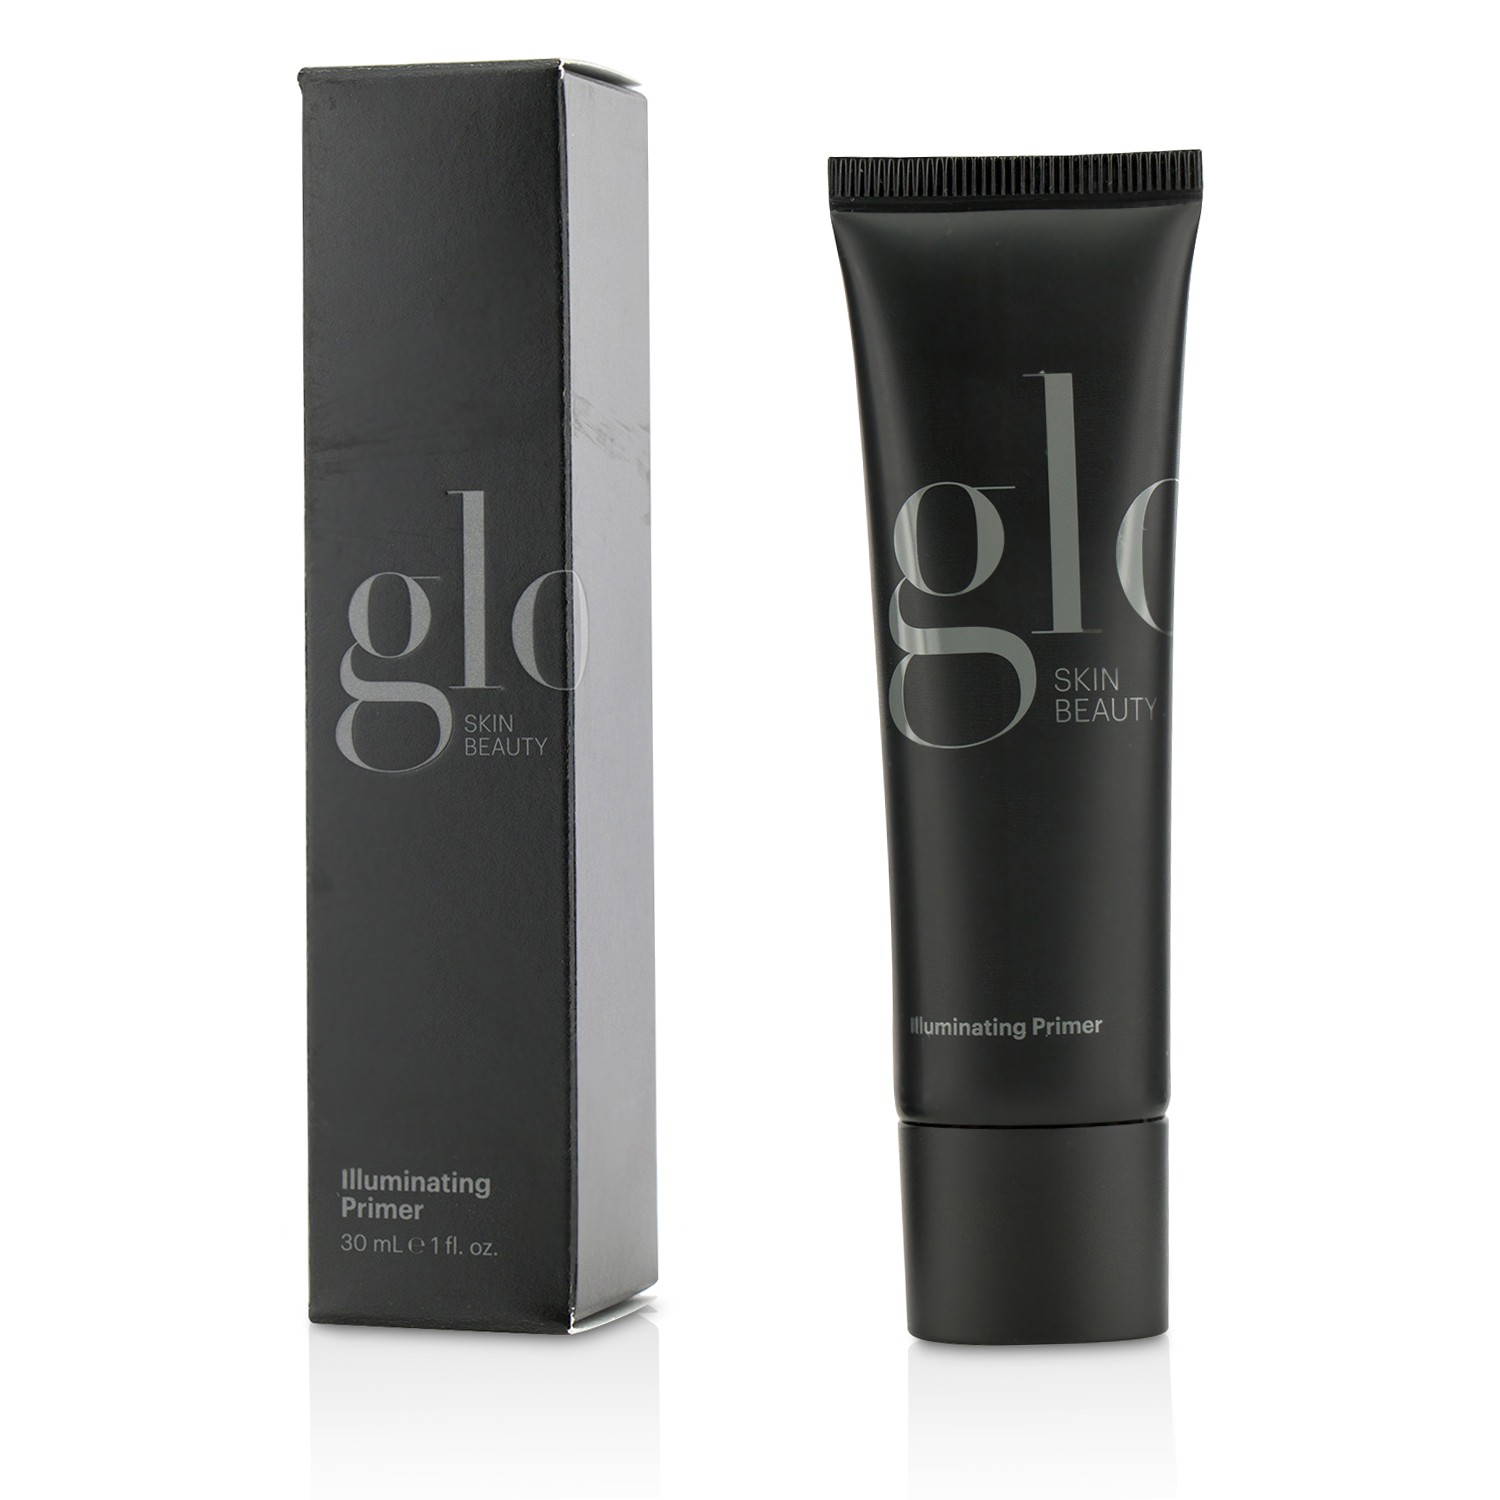 Illuminating Primer Glo Skin Beauty Image